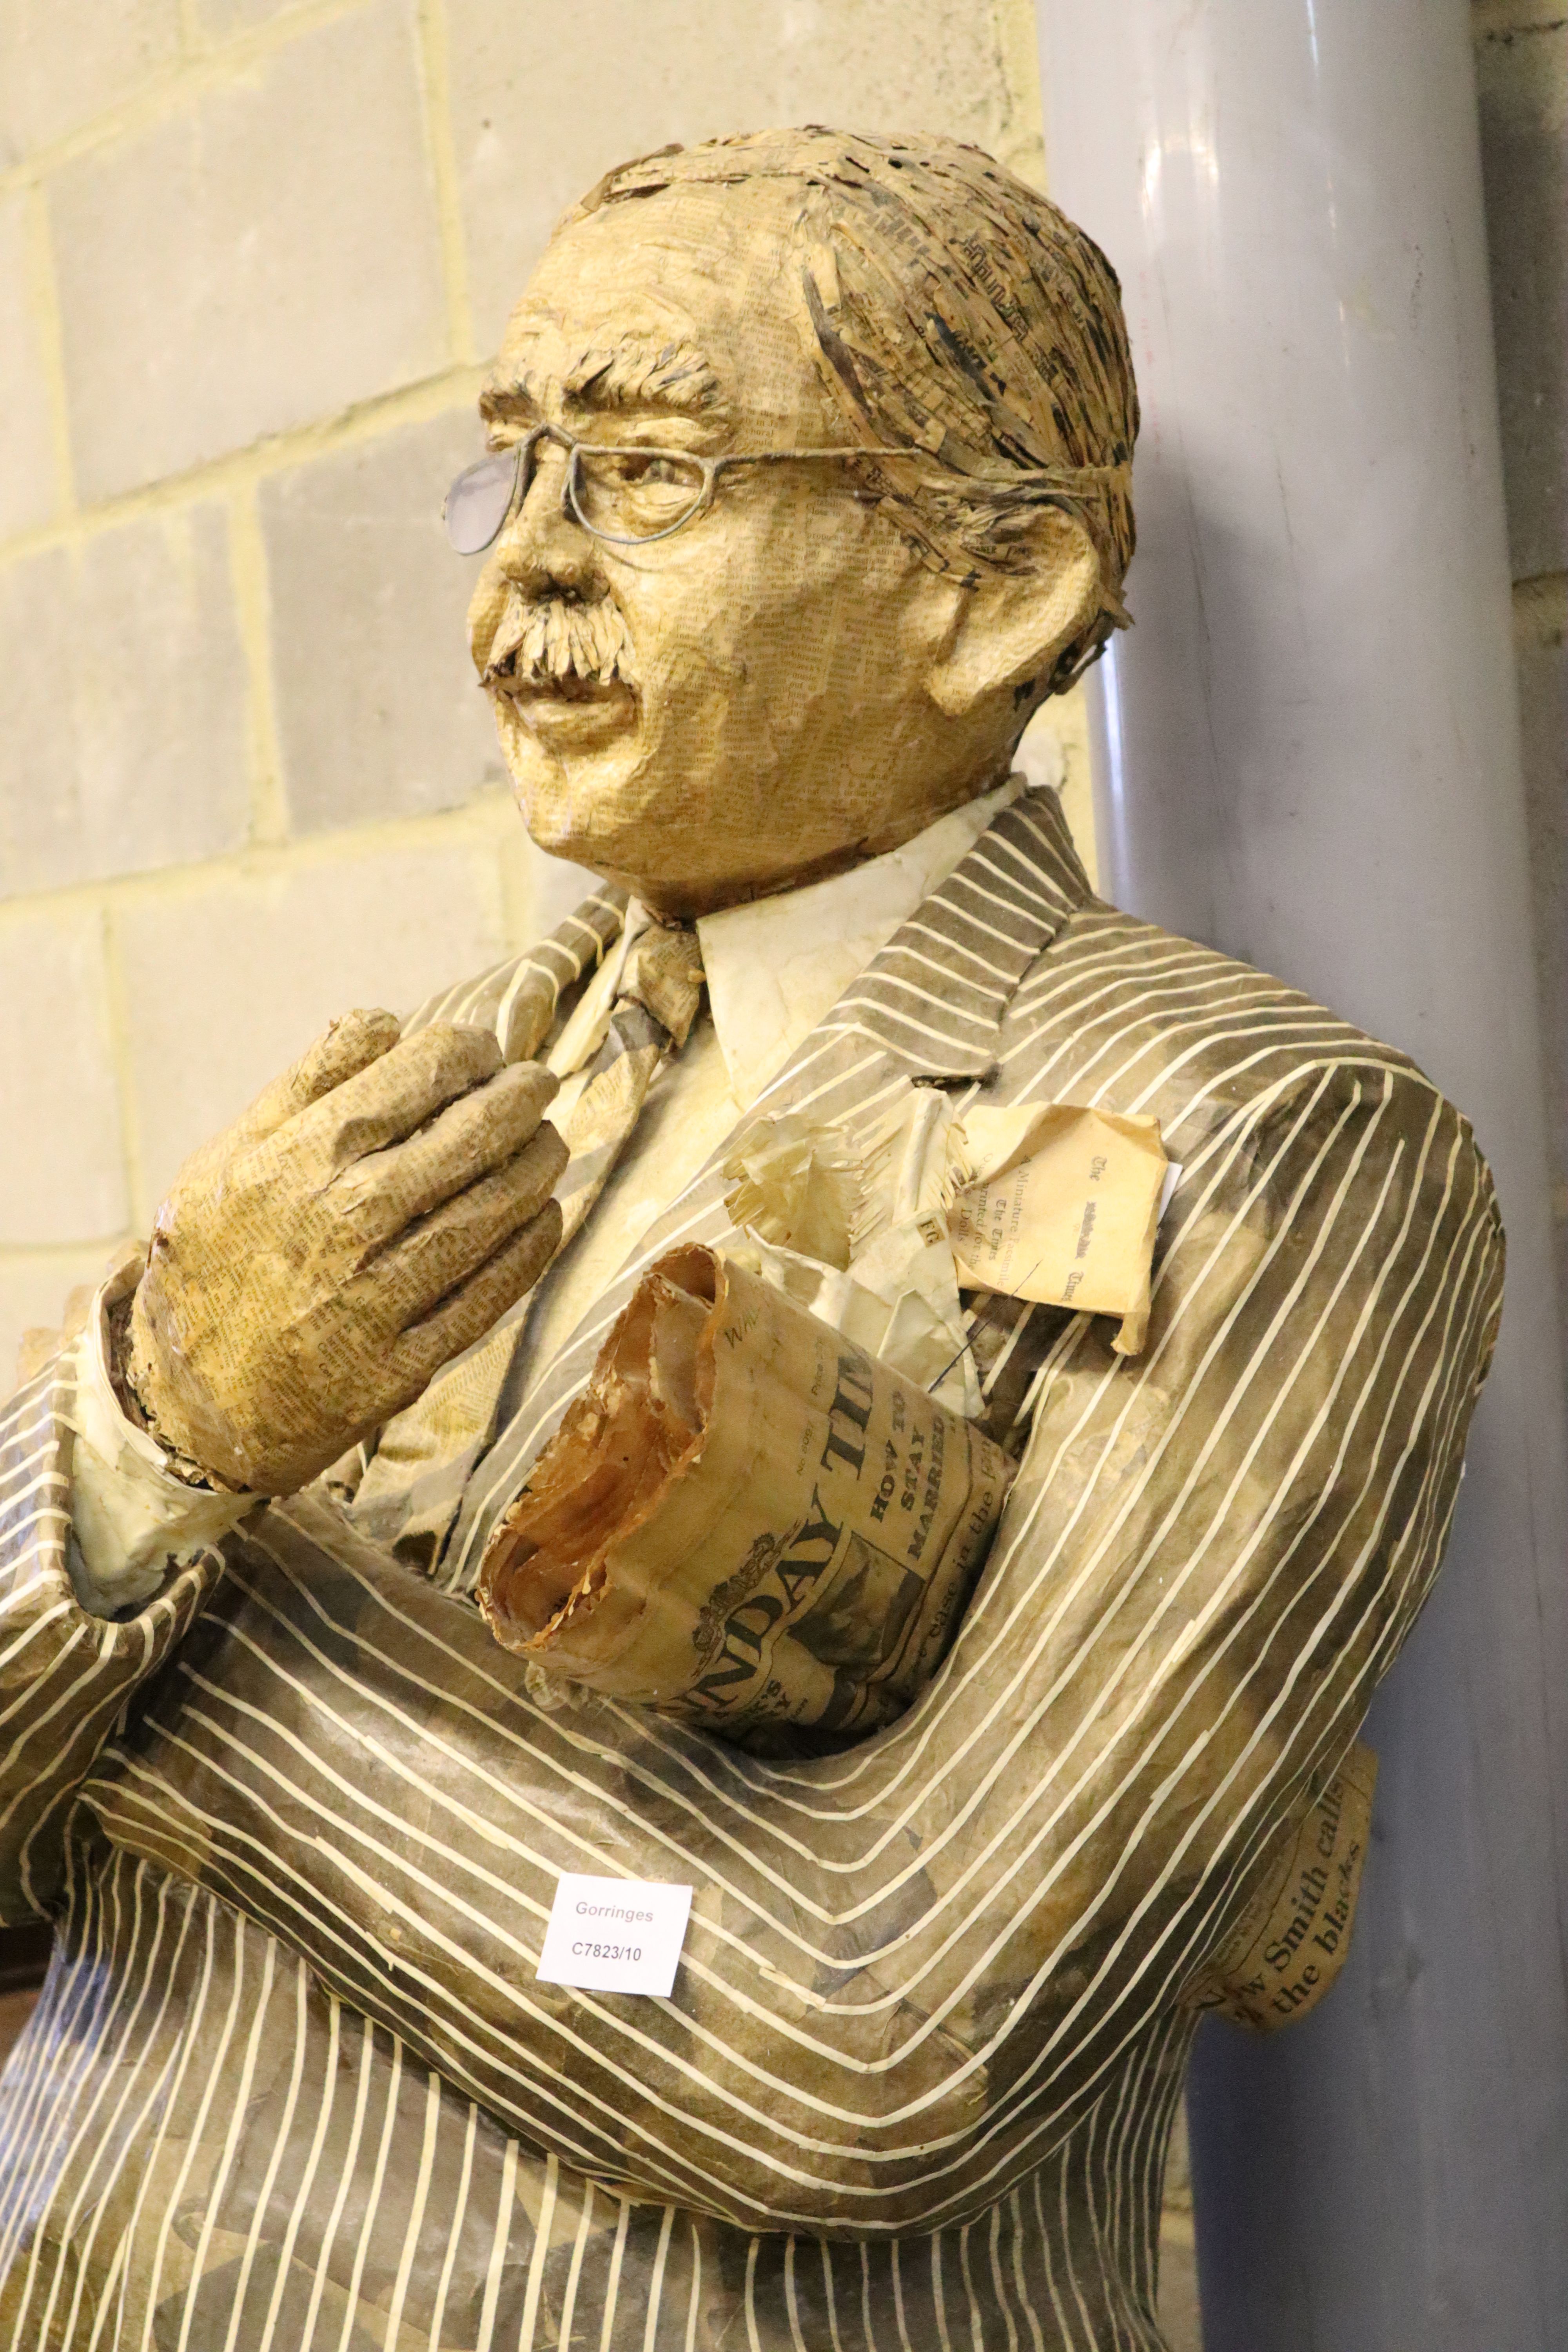 A stuffed papier mache figure of a gentleman holding the Sunday Times, height 170cm